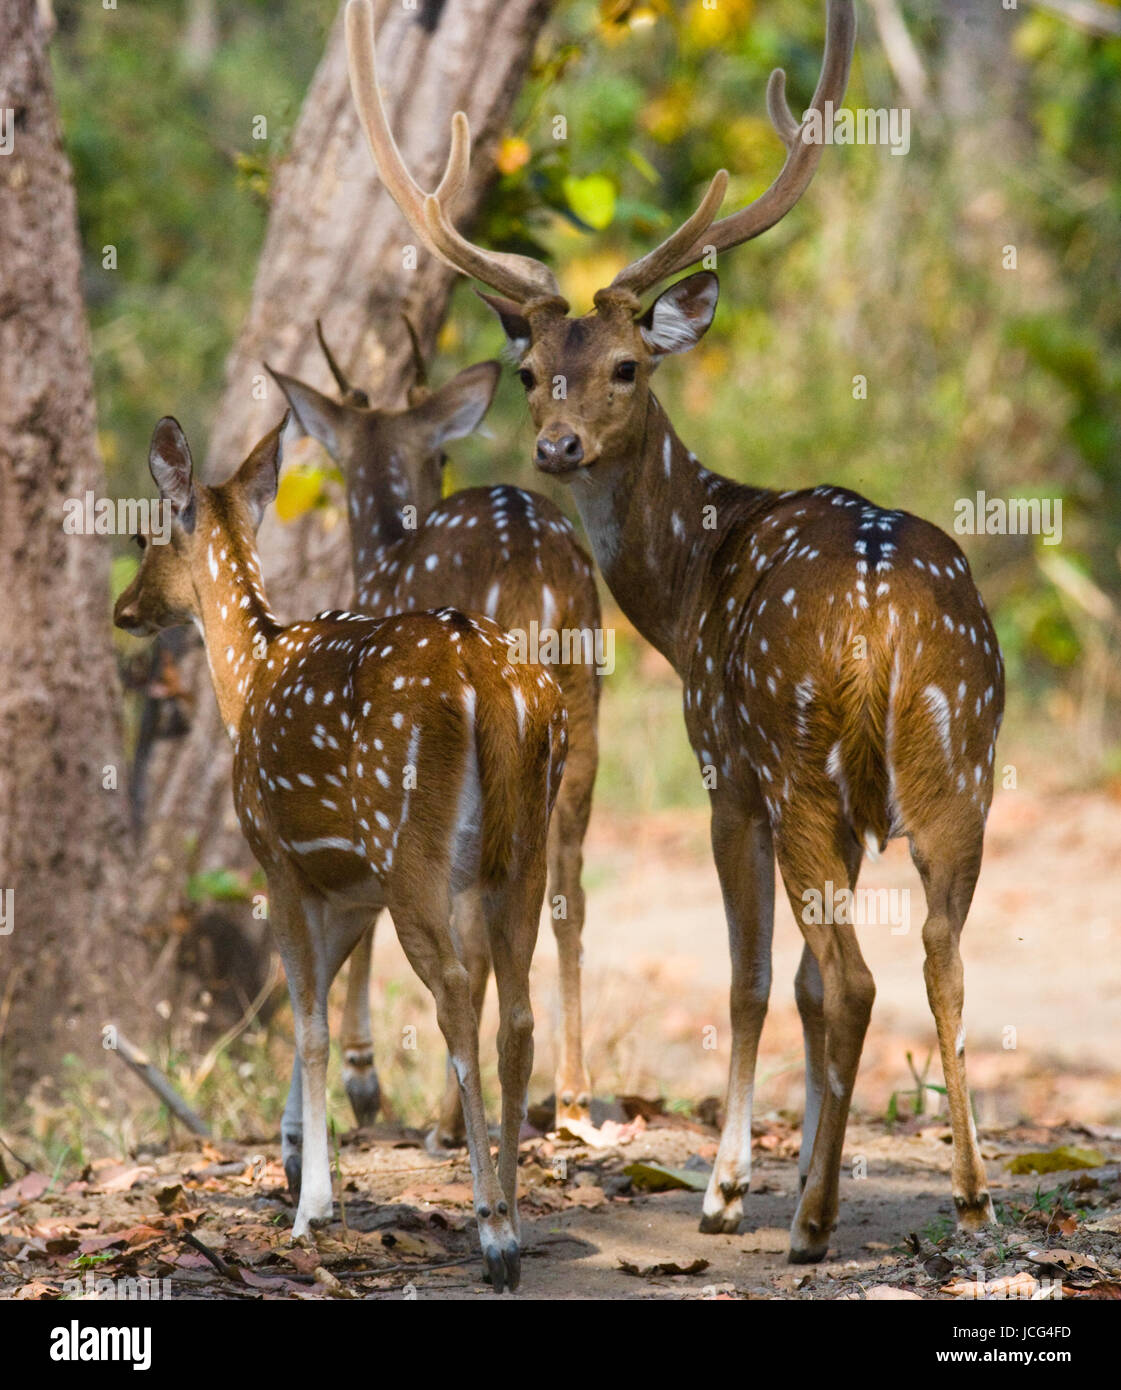 Eine Gruppe von Hirschen steht im Dschungel in freier Wildbahn. Indien. Nationalpark. Stockfoto